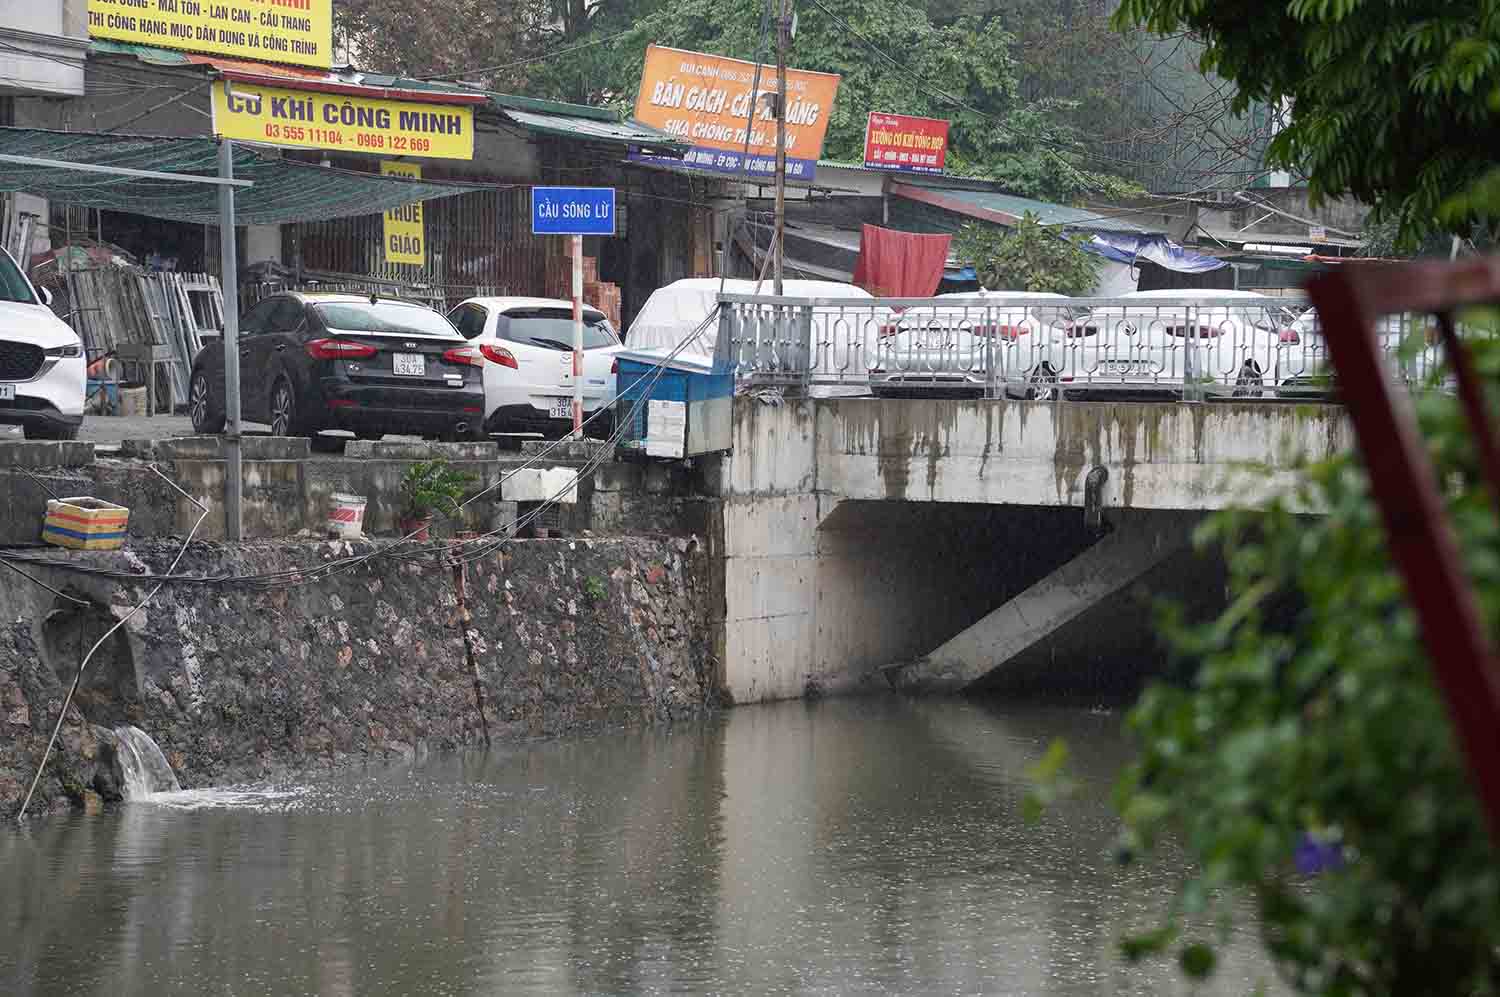 Gói thầu số 3 (xây dựng hệ thống cống bao cho sông Lừ) đã bị UBND TP.Hà Nội chấp thuận việc chấm dứt hợp đồng thi công.